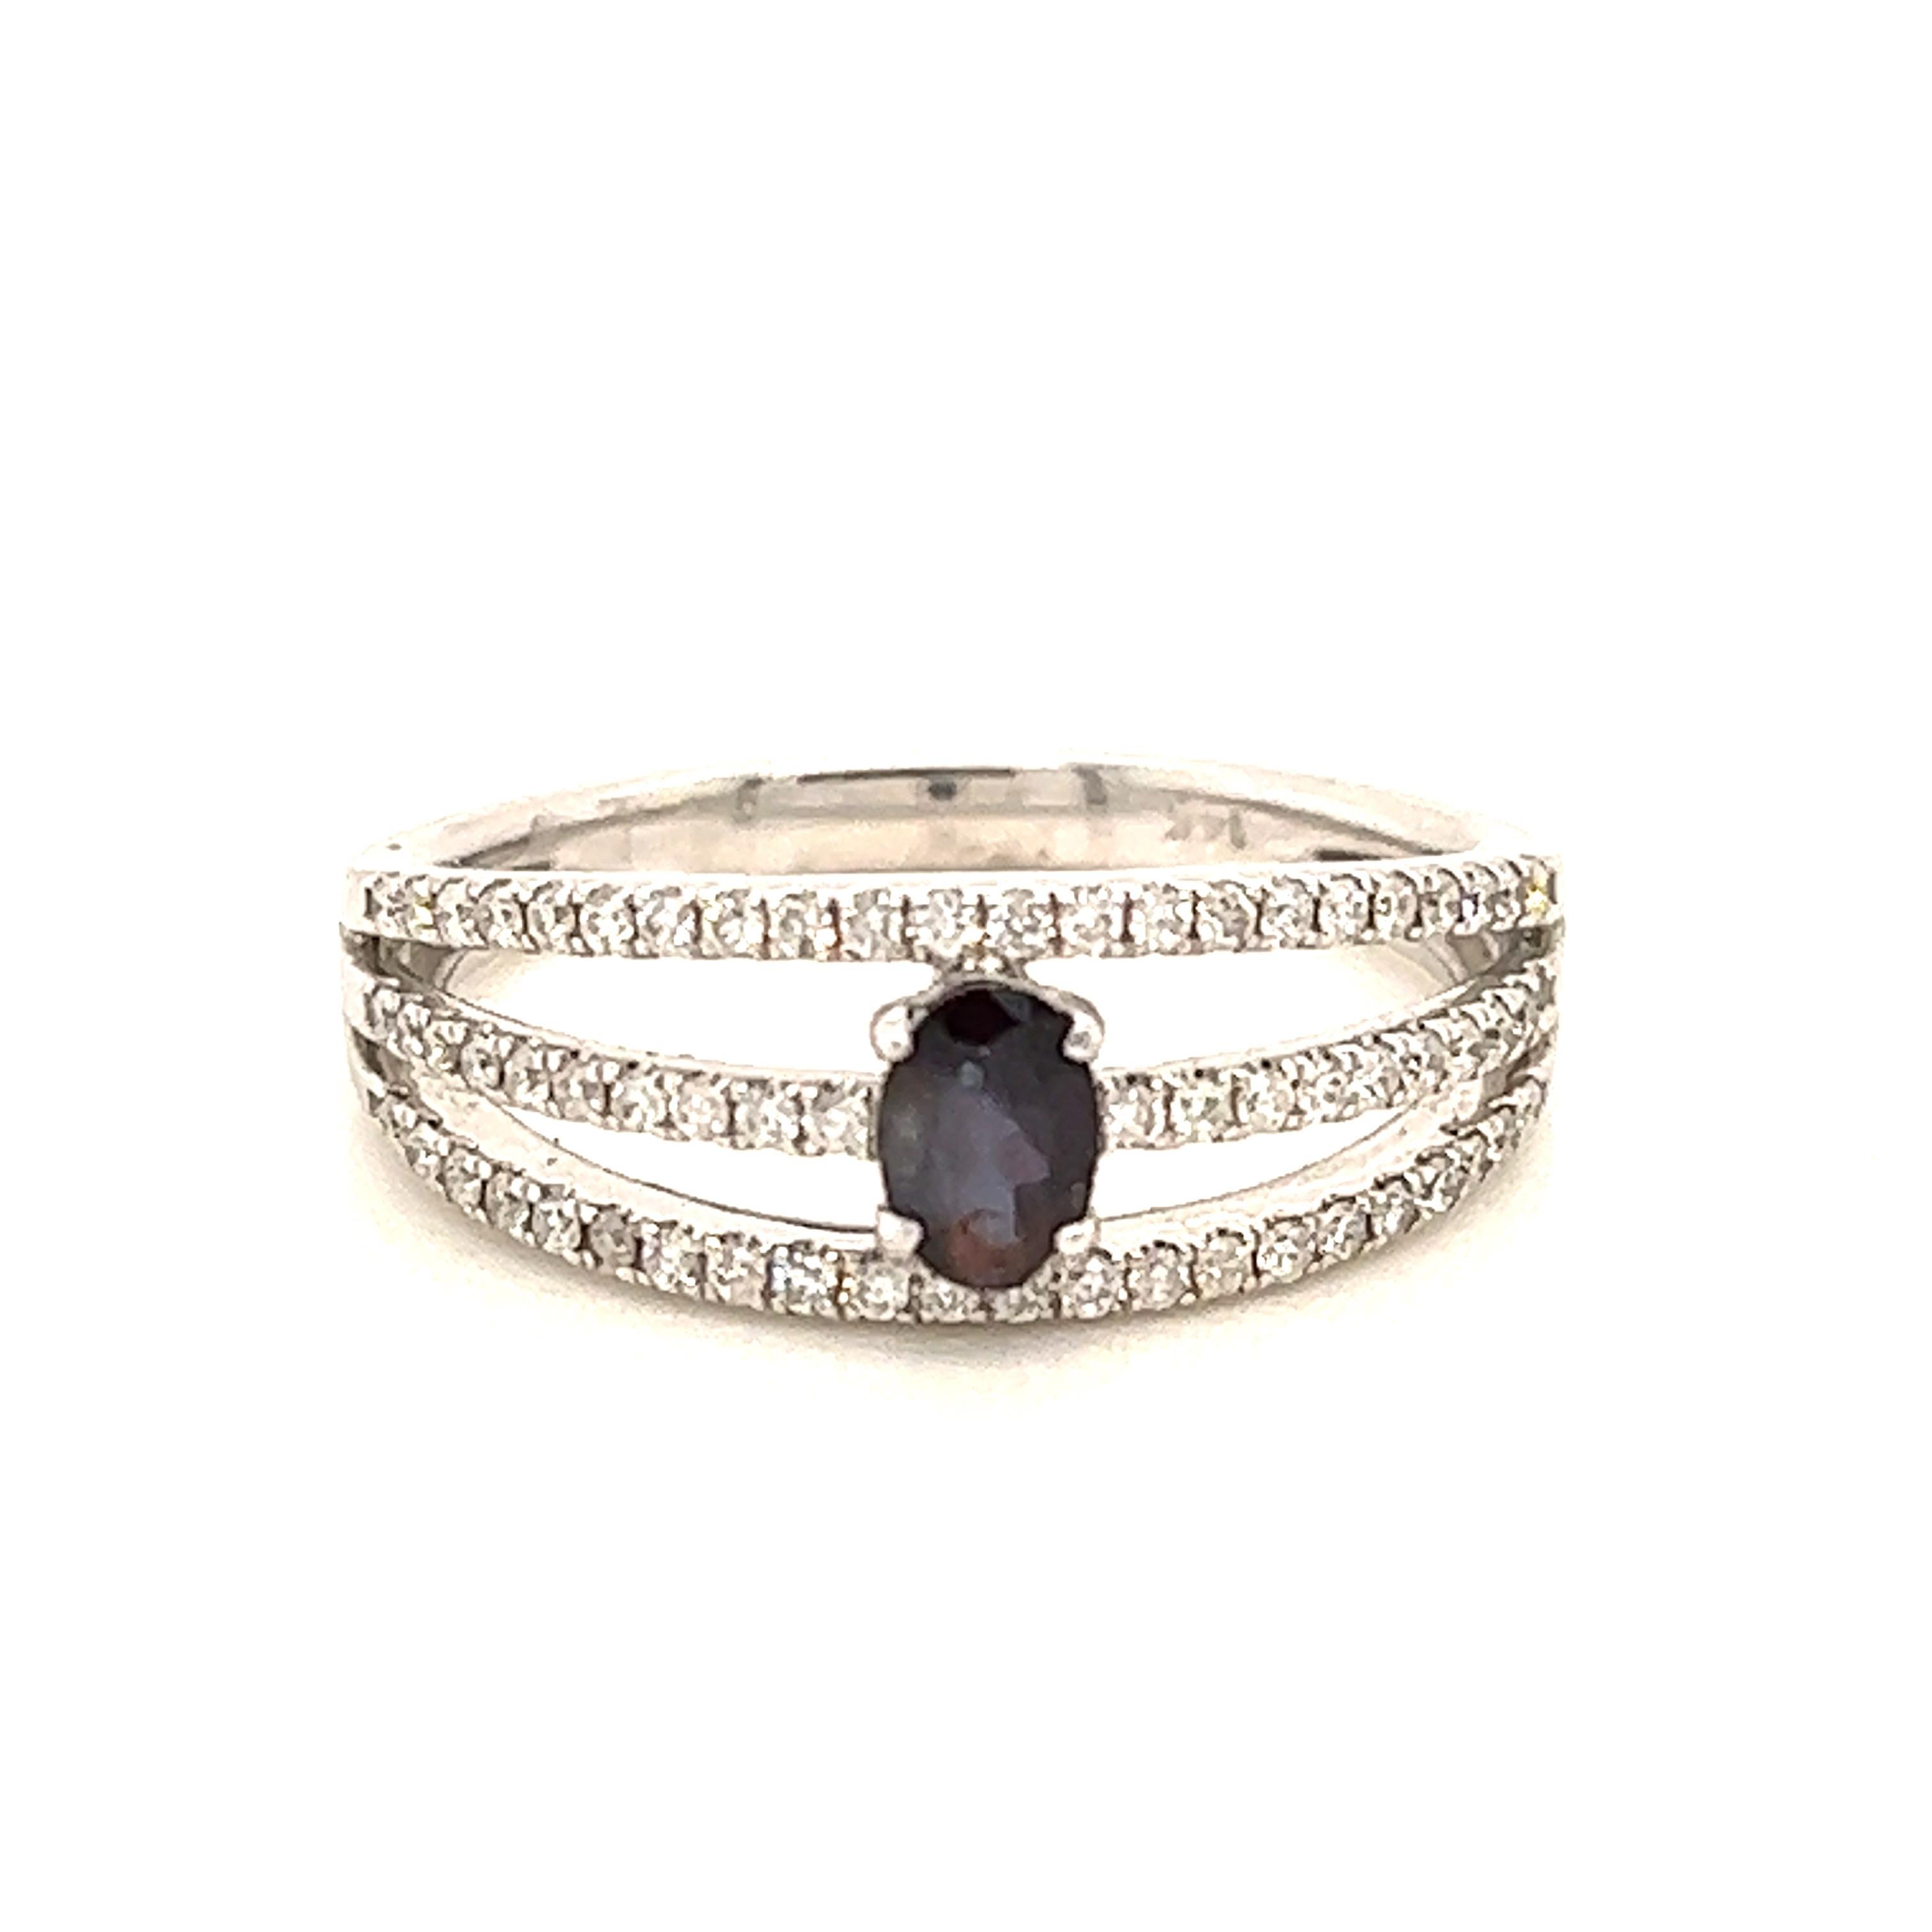 Dies ist ein wunderschöner ovaler Alexandrit in AAA-Qualität, der von zierlichen Diamanten umgeben ist und in einer Weißgoldfassung im Vintage-Stil gefasst ist. Dieser Ring zeigt einen natürlichen 0,34 Karat schweren Alexandrit, der von weißen